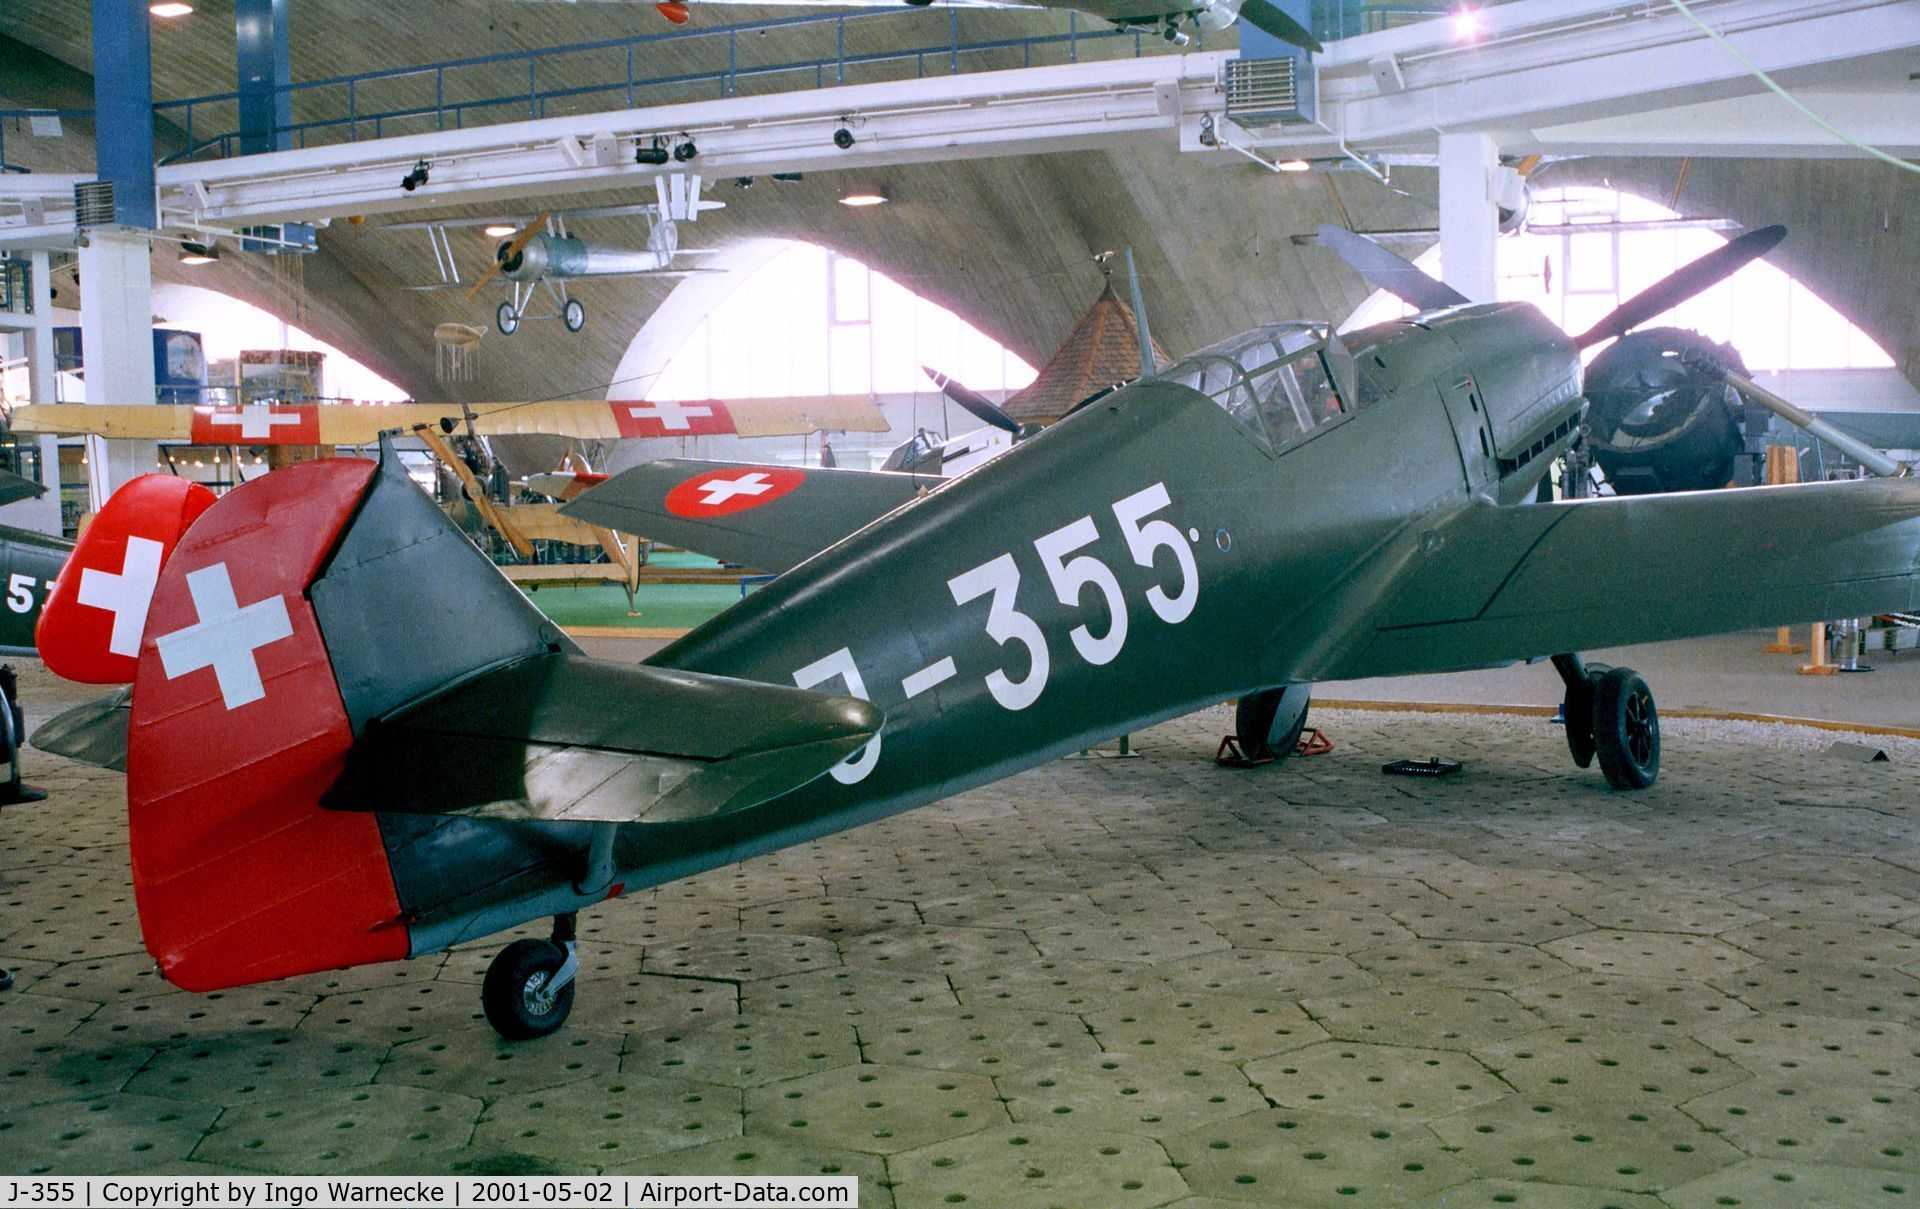 J-355, Messerschmitt Bf-109E-3 C/N 2242, Messerschmitt Bf 109E-3 at the Fliegermuseum Dübendorf